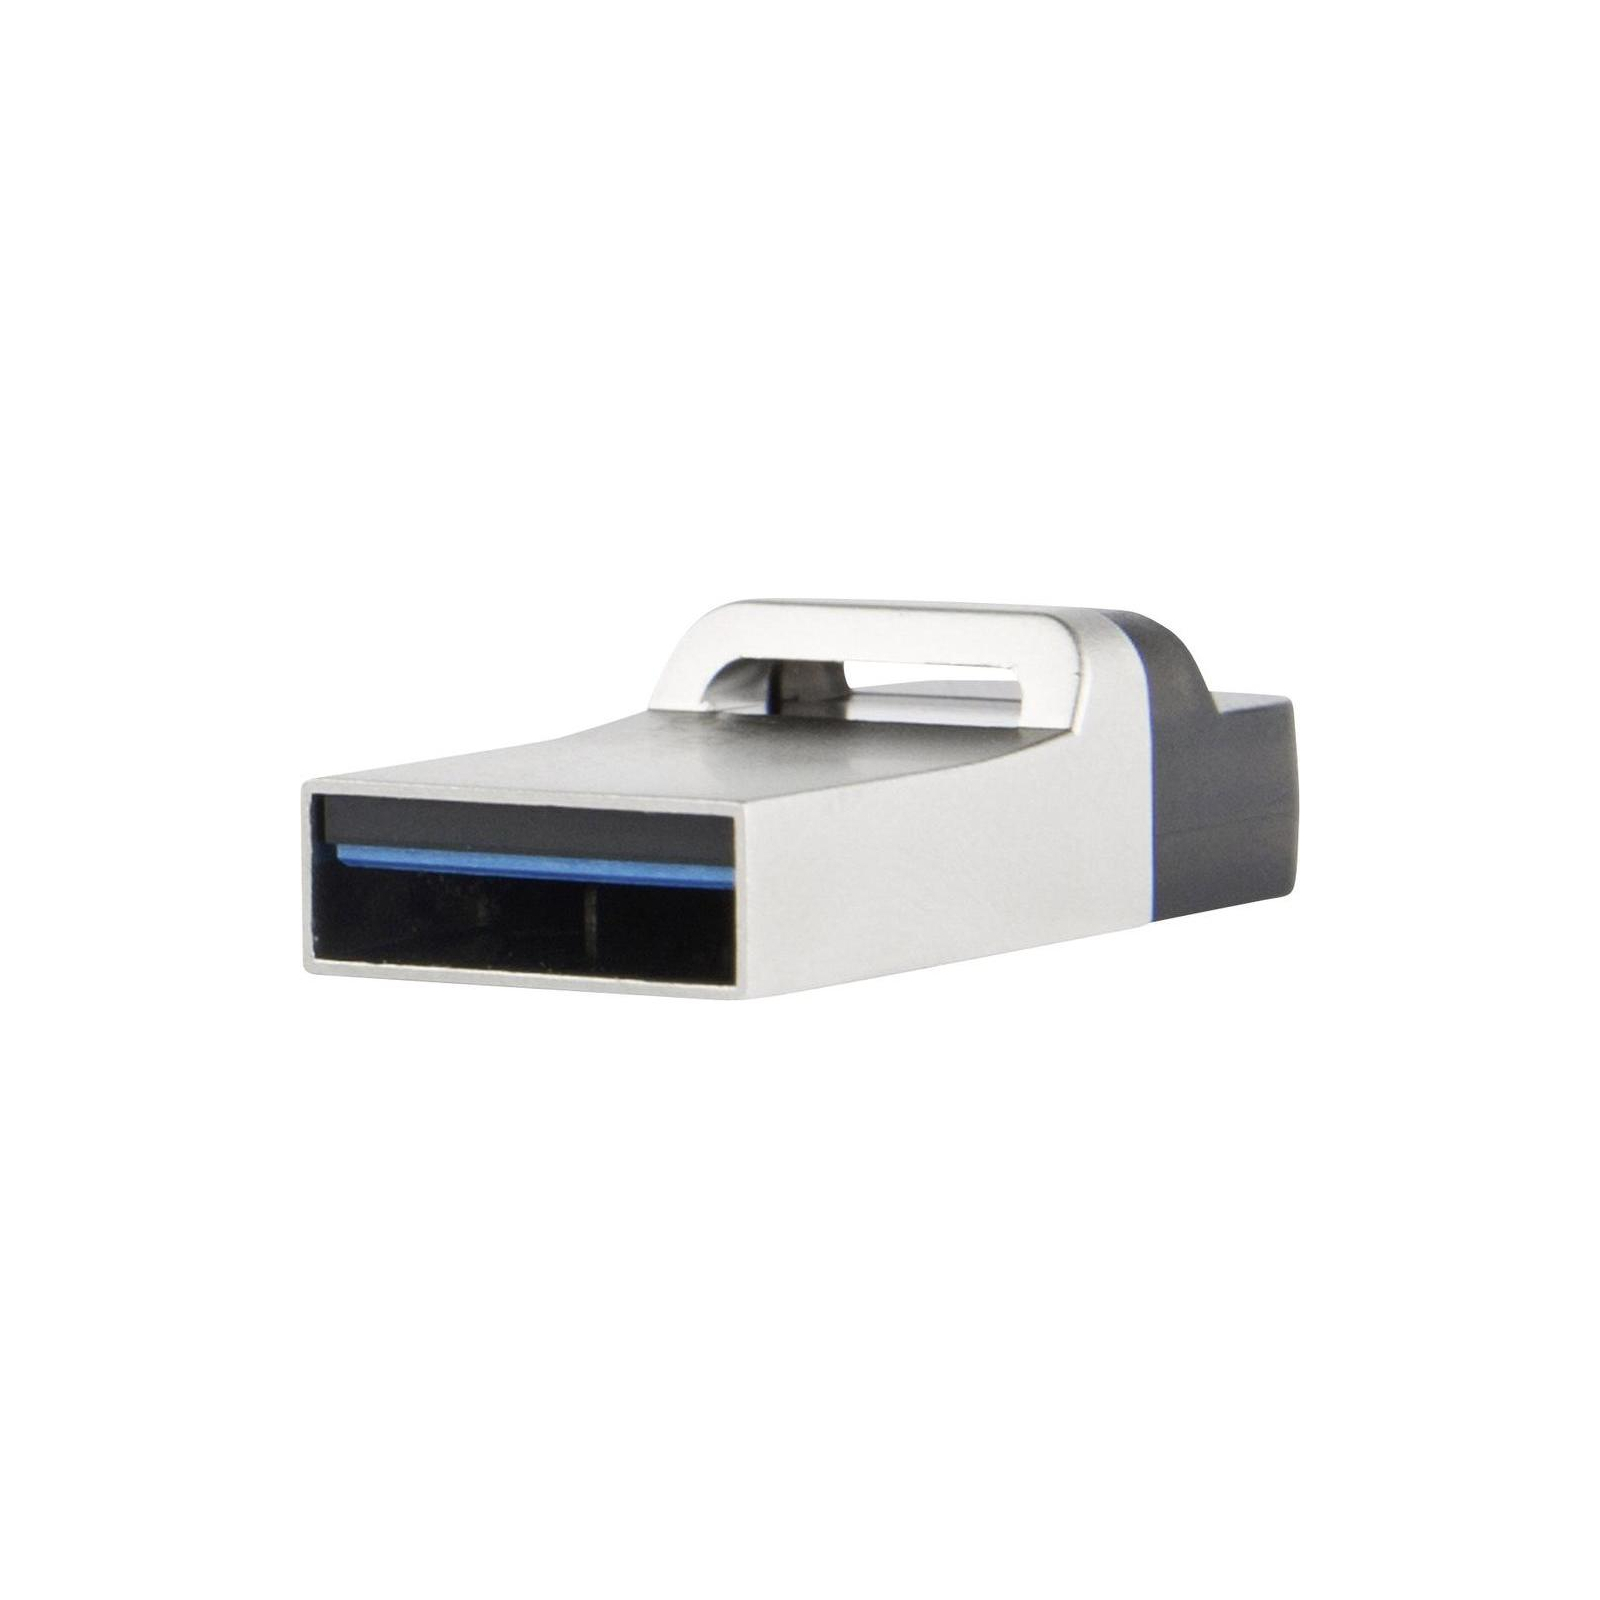 USB флеш накопитель Transcend 16GB JetFlash OTG 880 Metal Silver USB 3.0 (TS16GJF880S) изображение 4